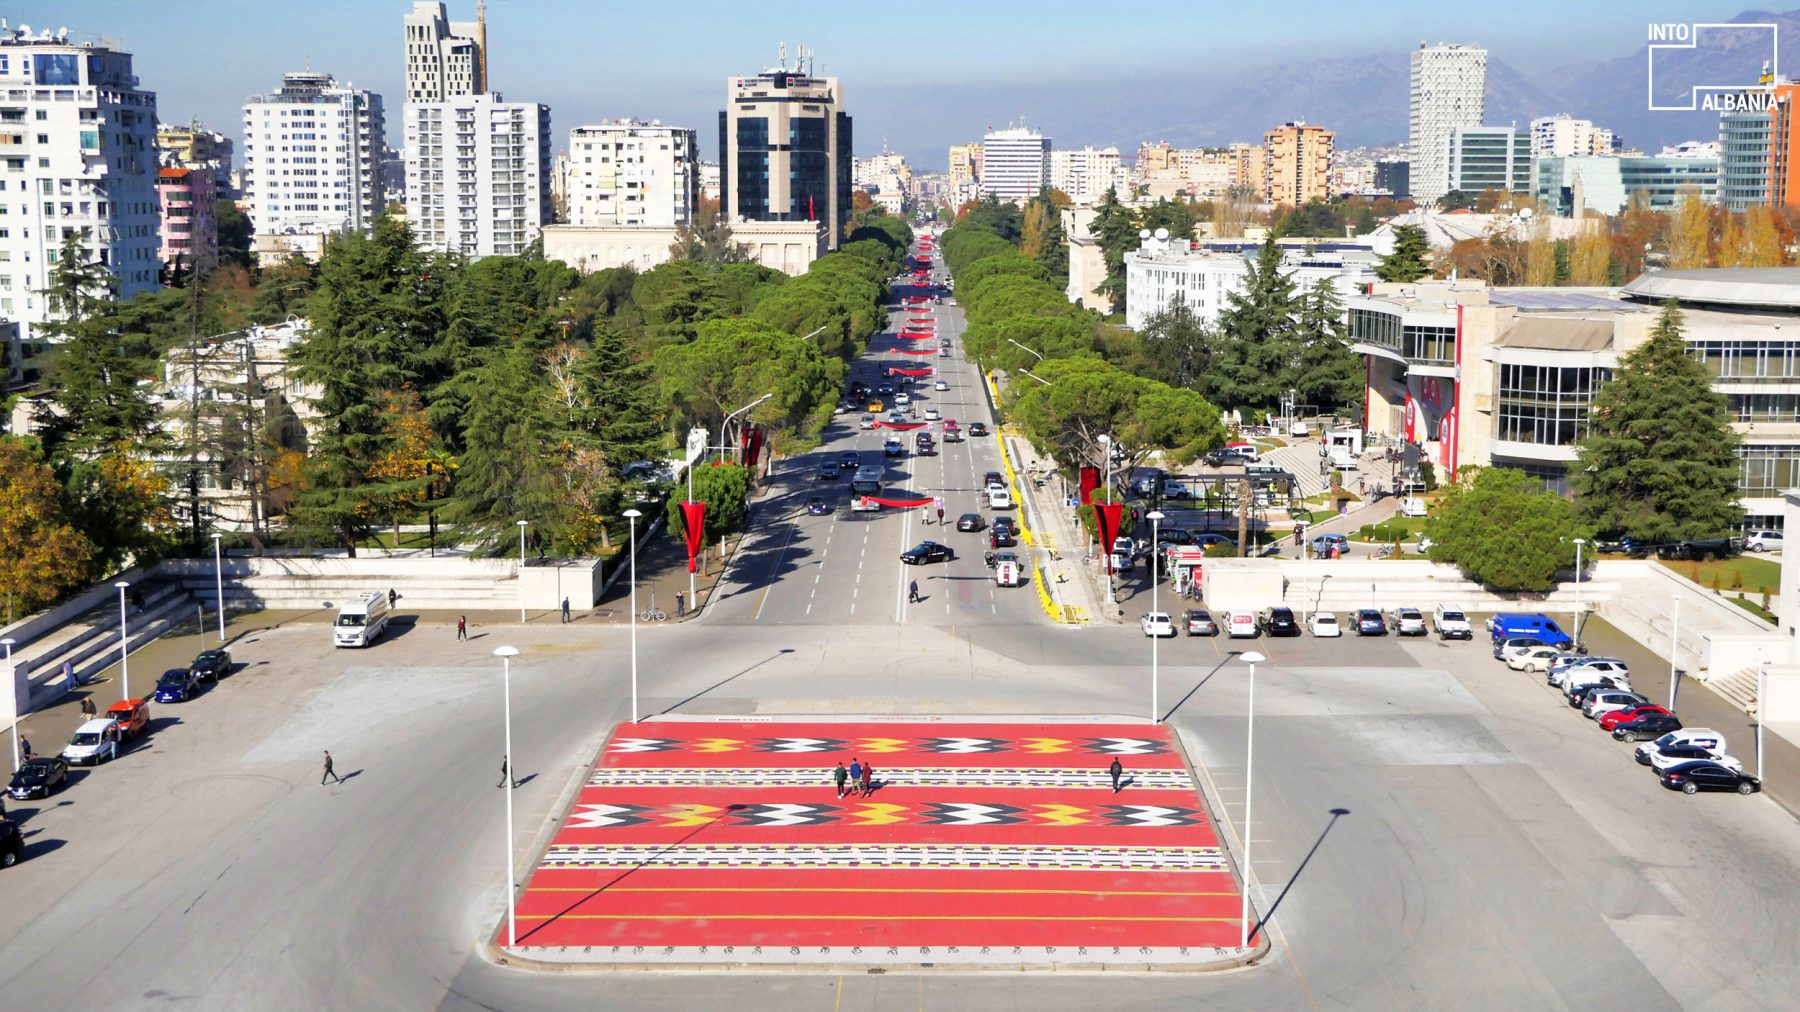 The New York Times: Vizitoni Tiranën, kryeqytetin ku përplasen epoka të ndryshme